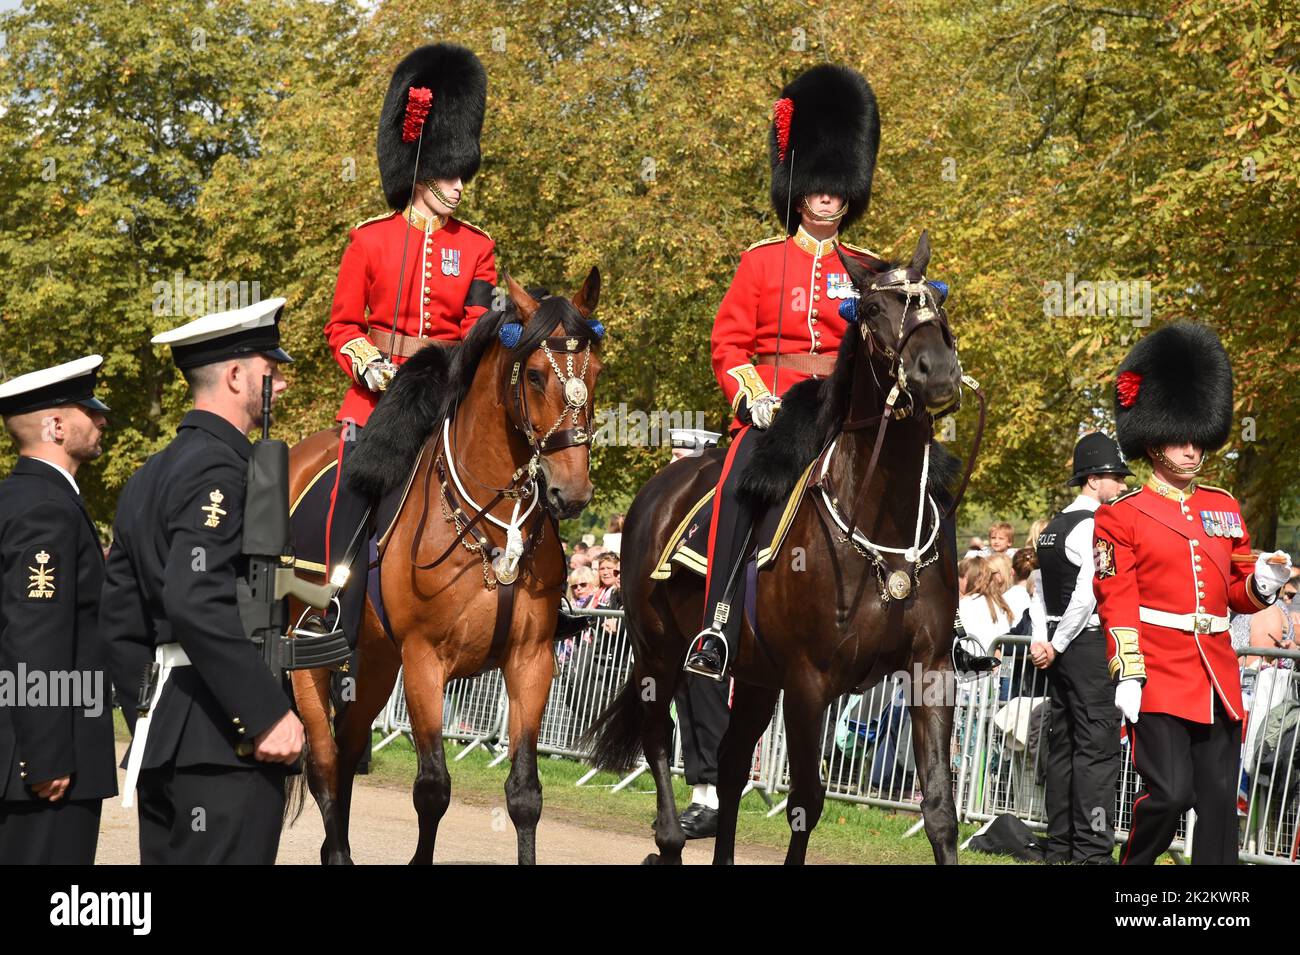 Funeral of Queen Elizabeth II Windsor 19 September 2022 Stock Photo